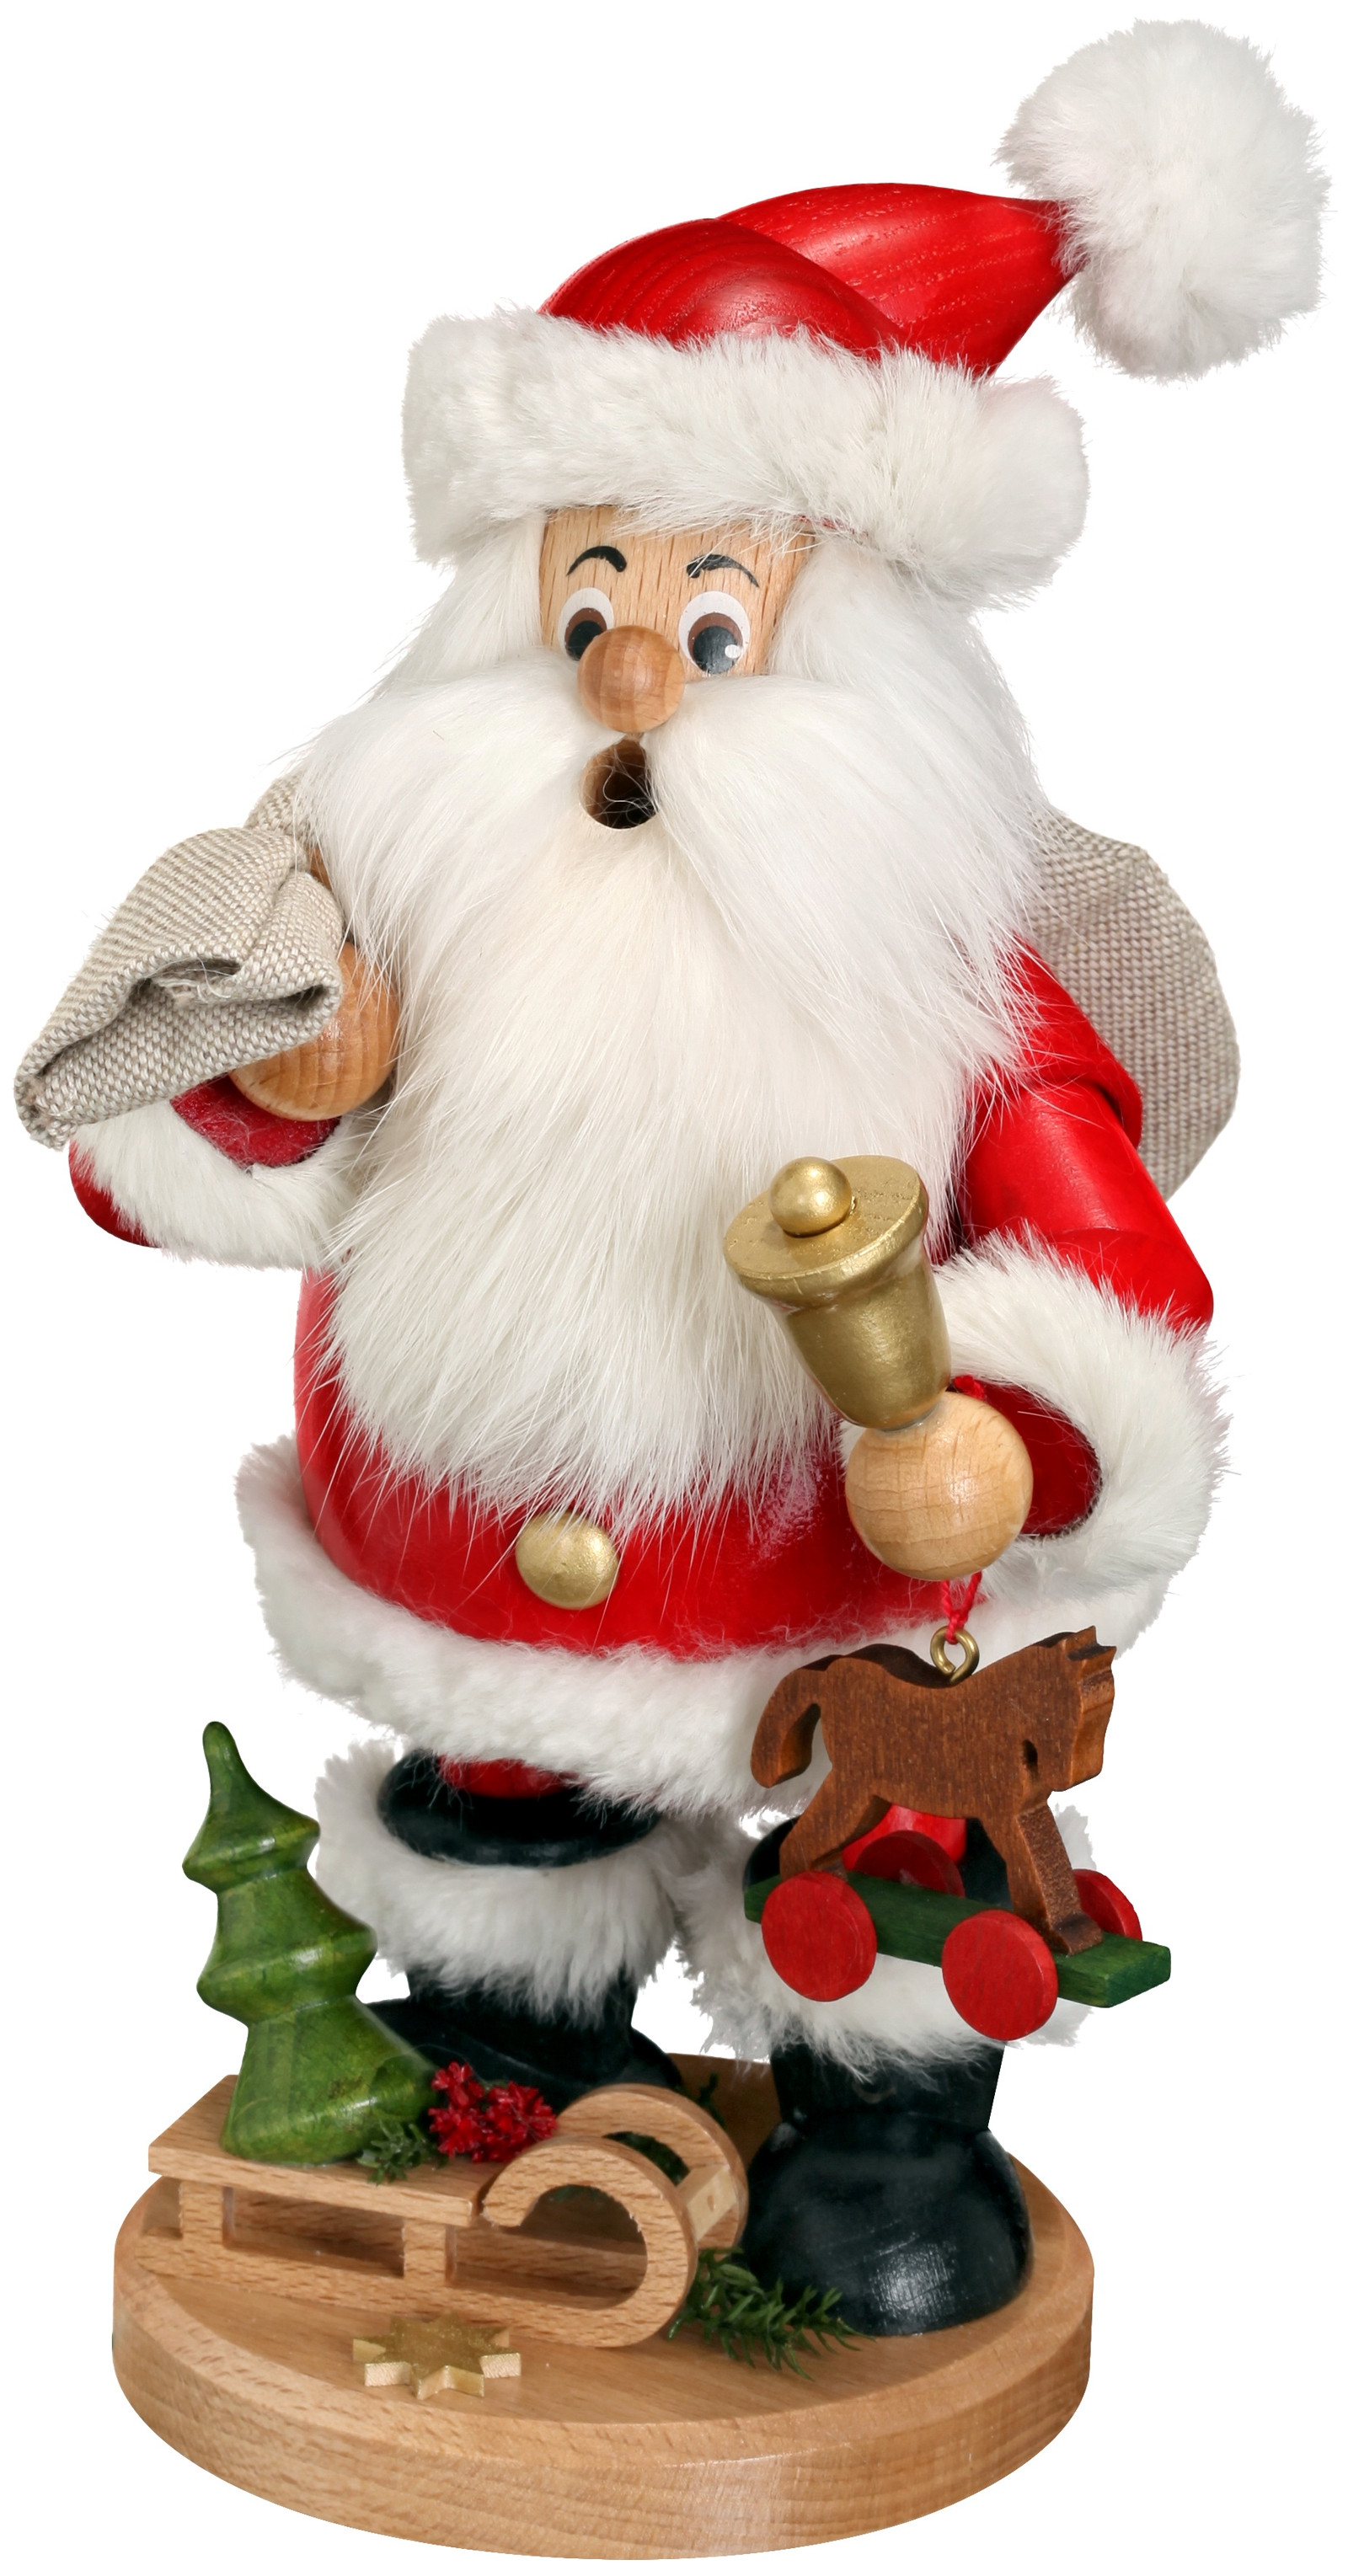 Drechselwerkstatt Uhlig Weihnachtsmann mit Geschenken